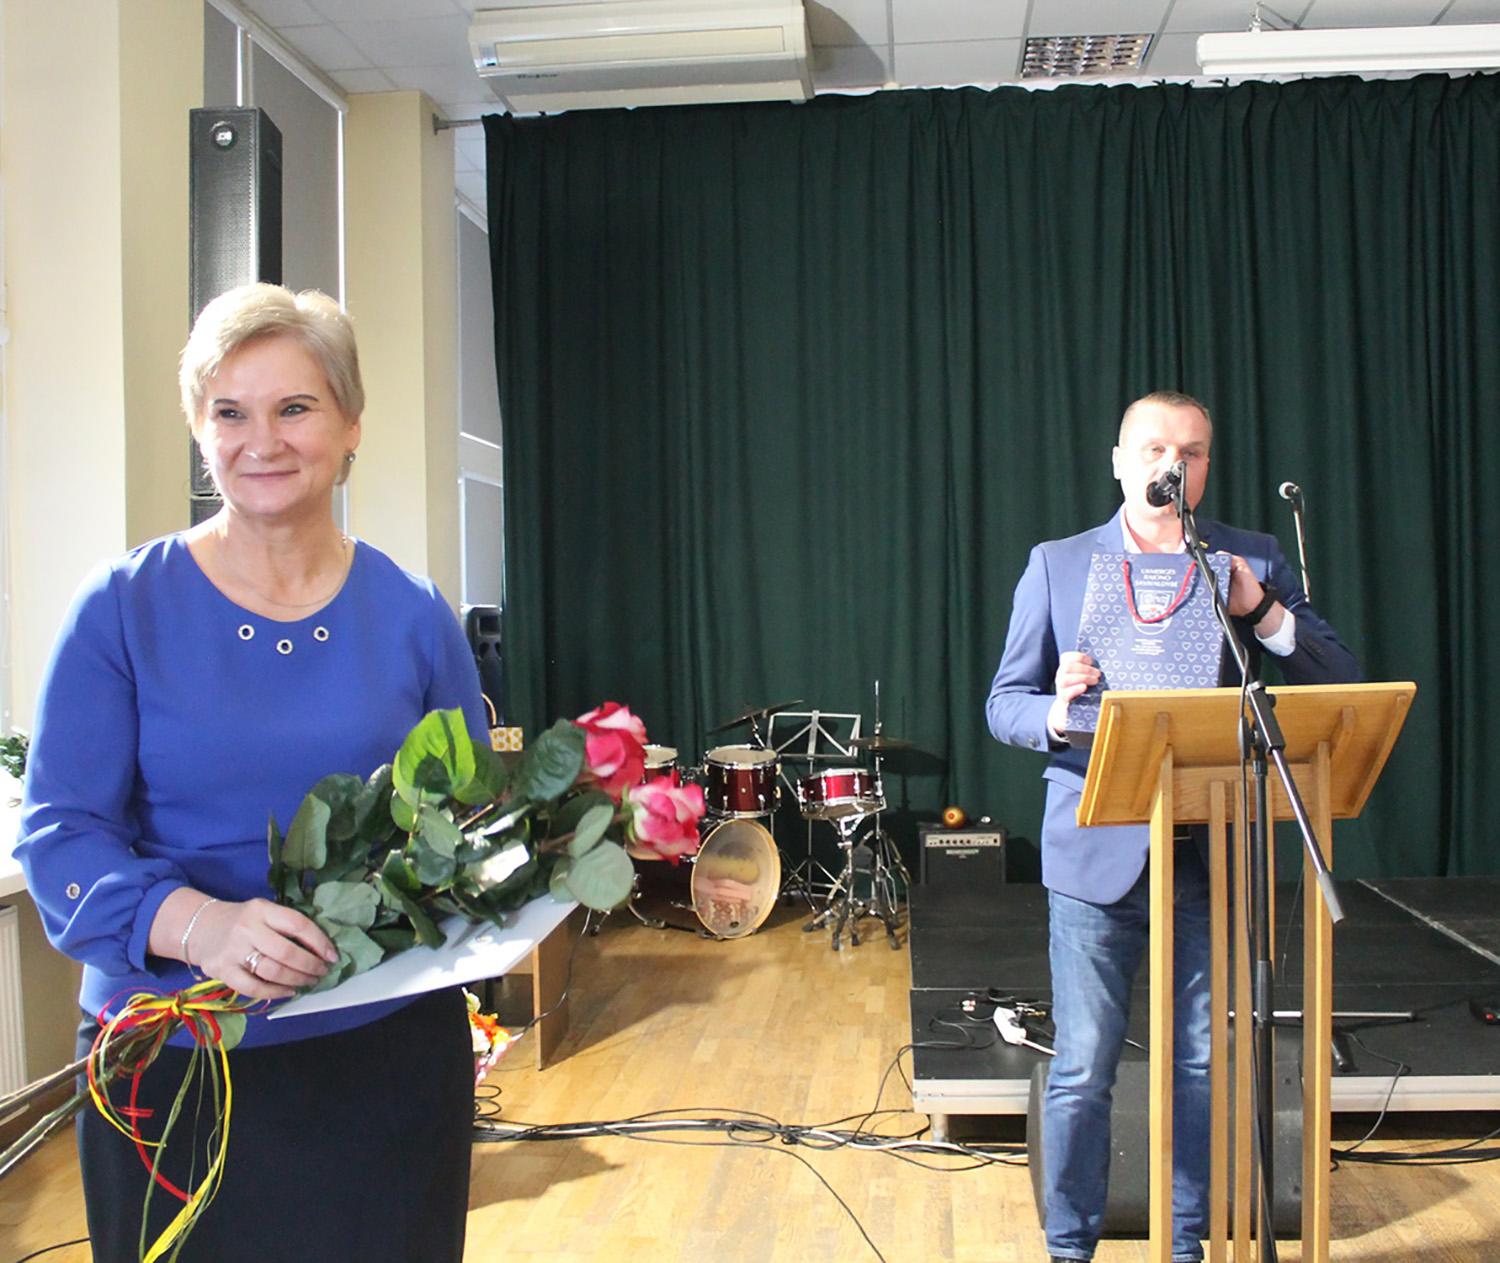 Puoselėja partizanų atminimą / Gėlėmis pasveikinta LPKTS Ukmergės filialo valdybos pirmininkė Aldona Kalesnikienė.